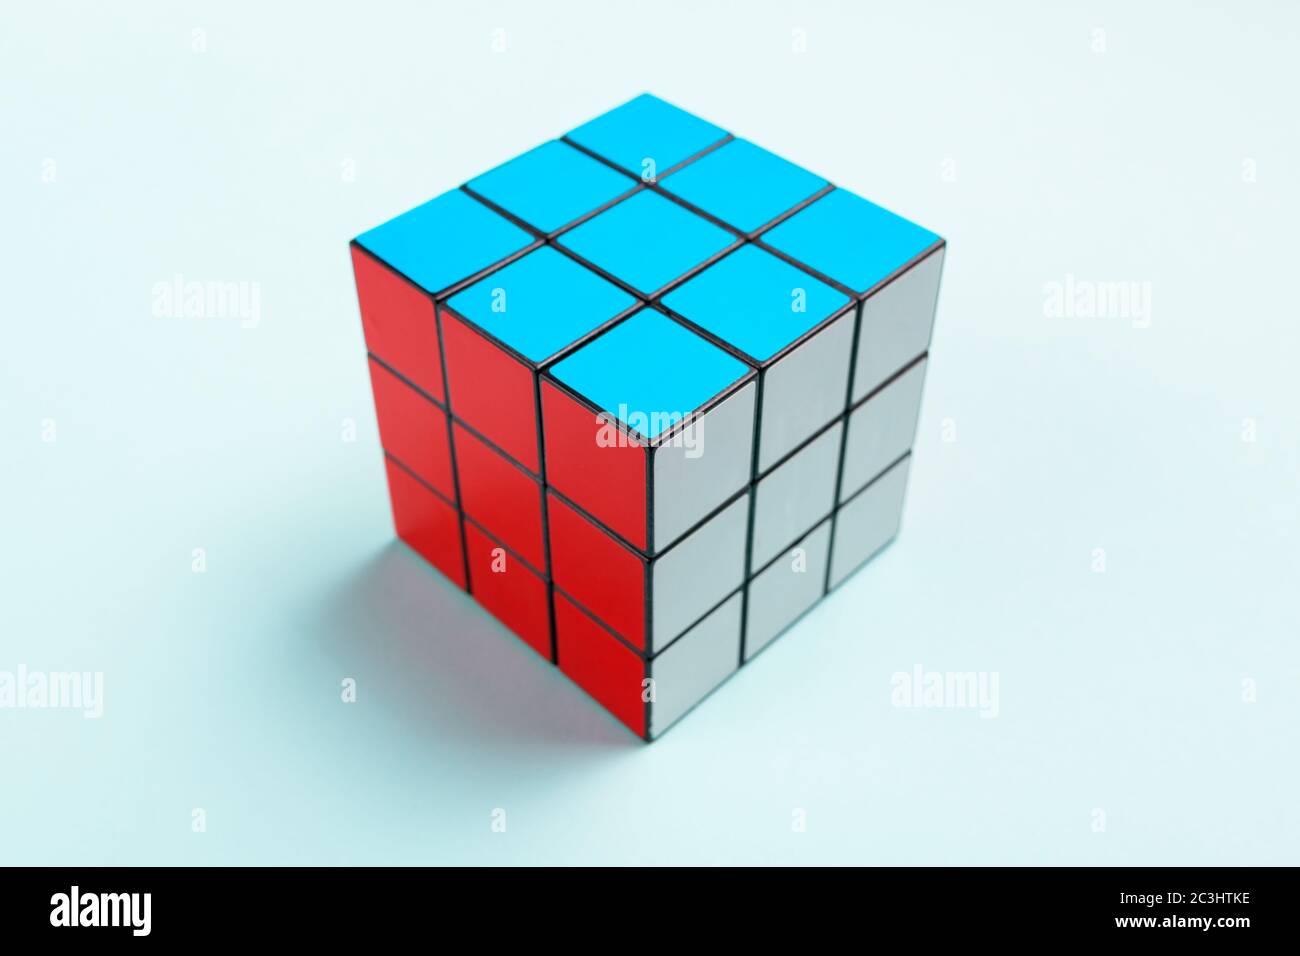 NOVI SAD, SERBIA - 10 GIUGNO 2018: Cubo di Rubik, originariamente chiamato Magic Cube, inventato da uno scultore ungherese e professore di architettura Erno Rubi Foto Stock